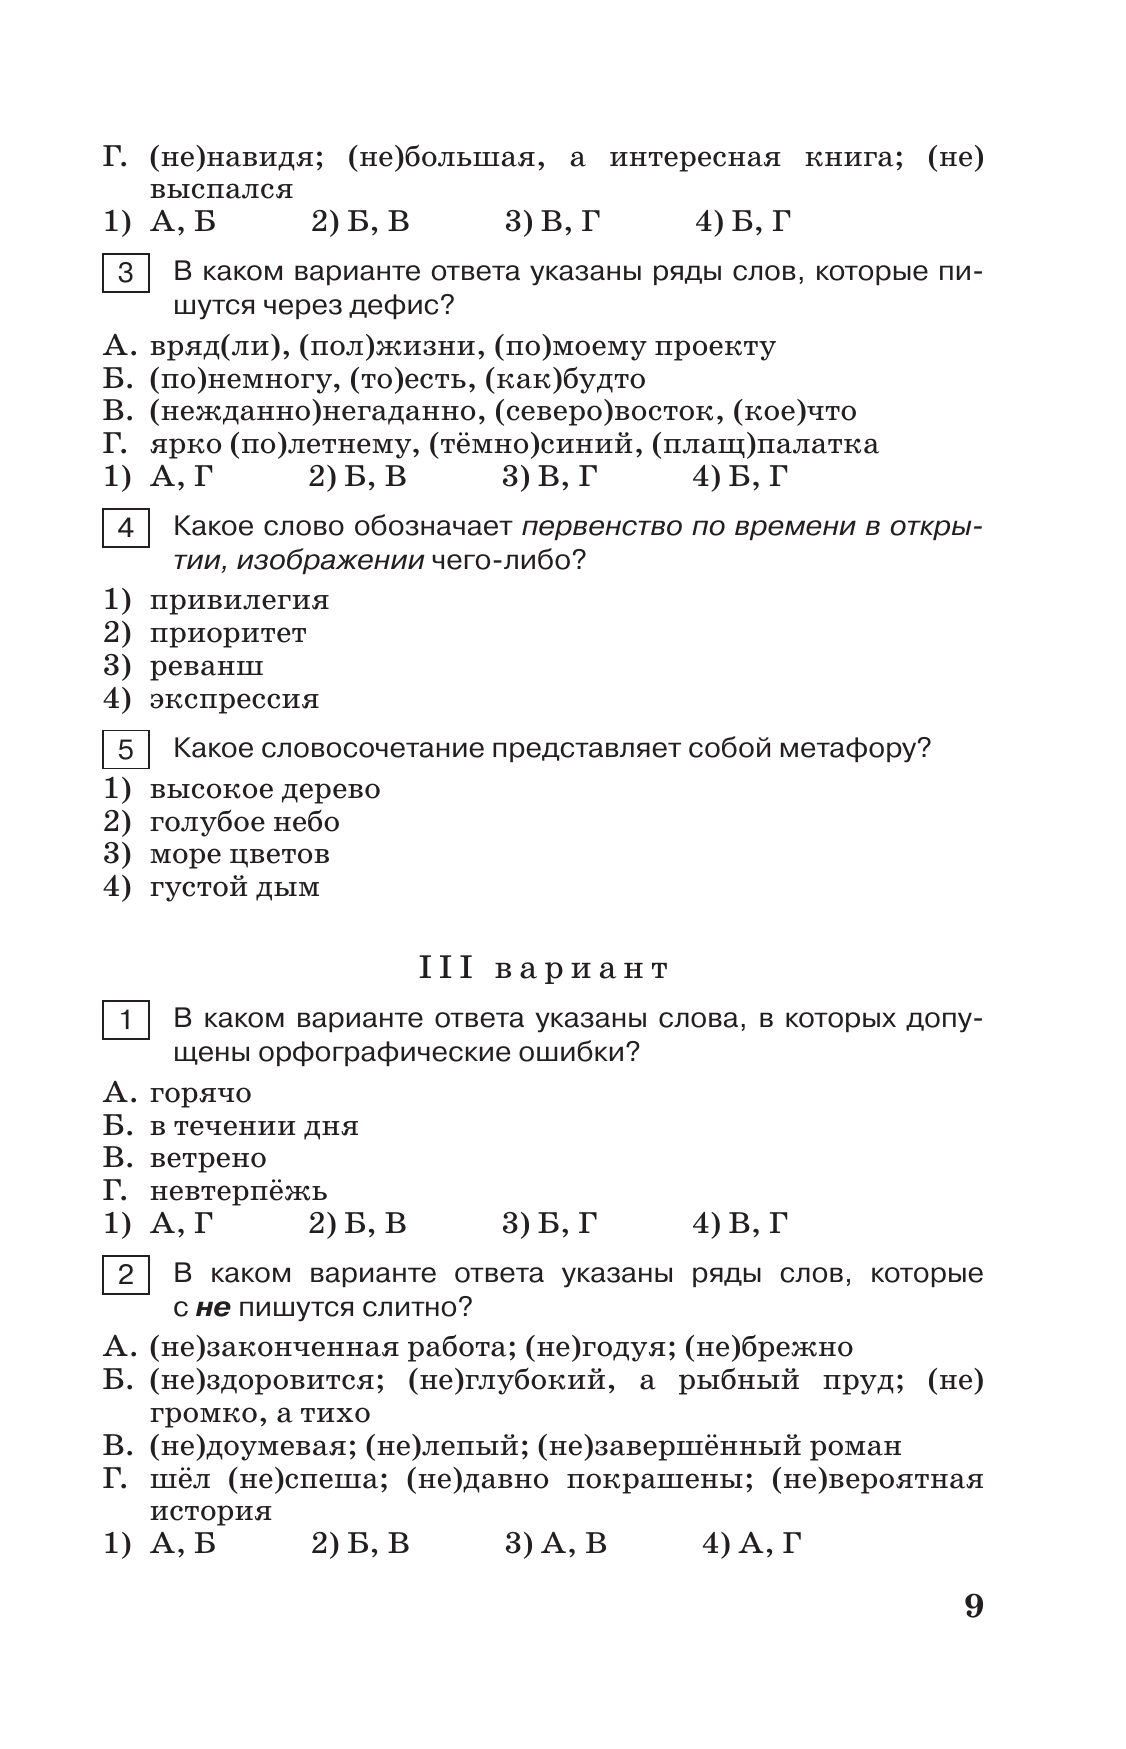 Тестовые задания по русскому языку. 8 класс. 7